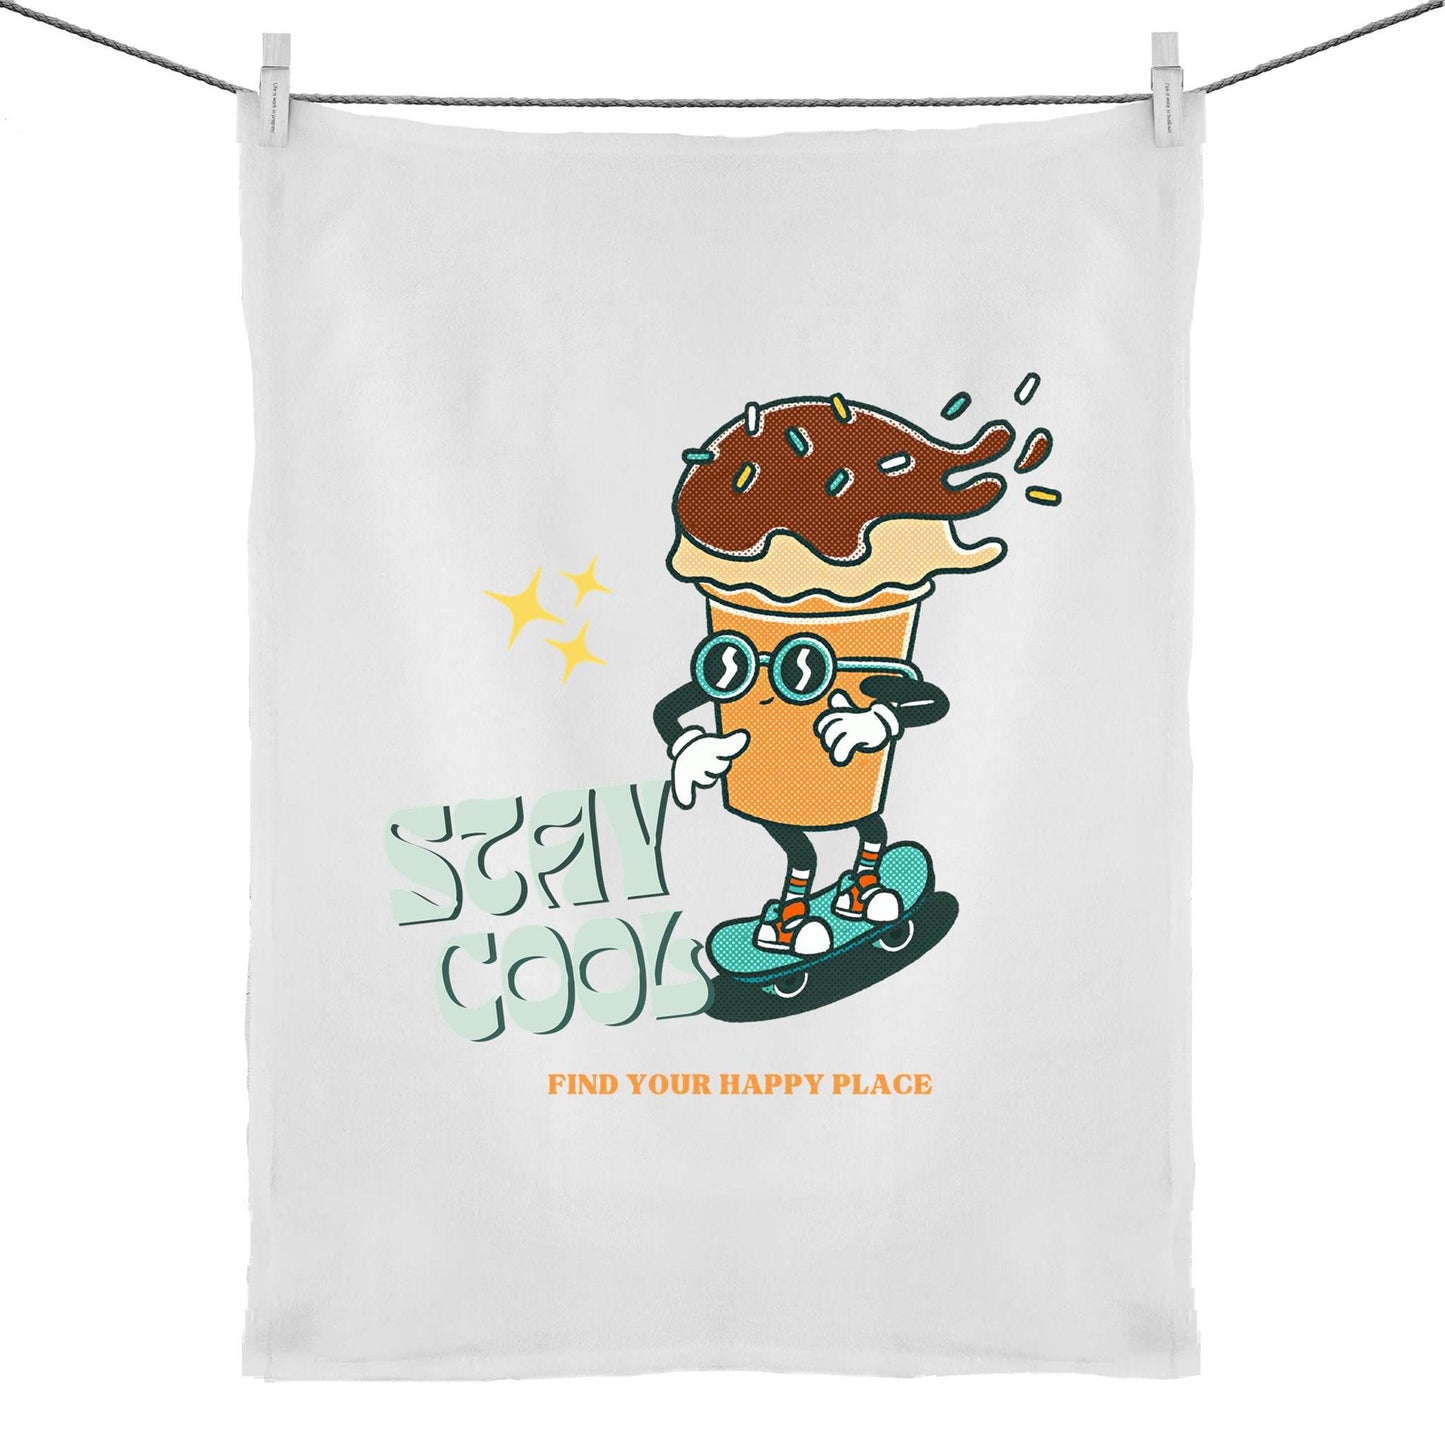 Stay Cool, Find Your Happy Place - 50% Linen 50% Cotton Tea Towel Default Title Tea Towel Retro Summer